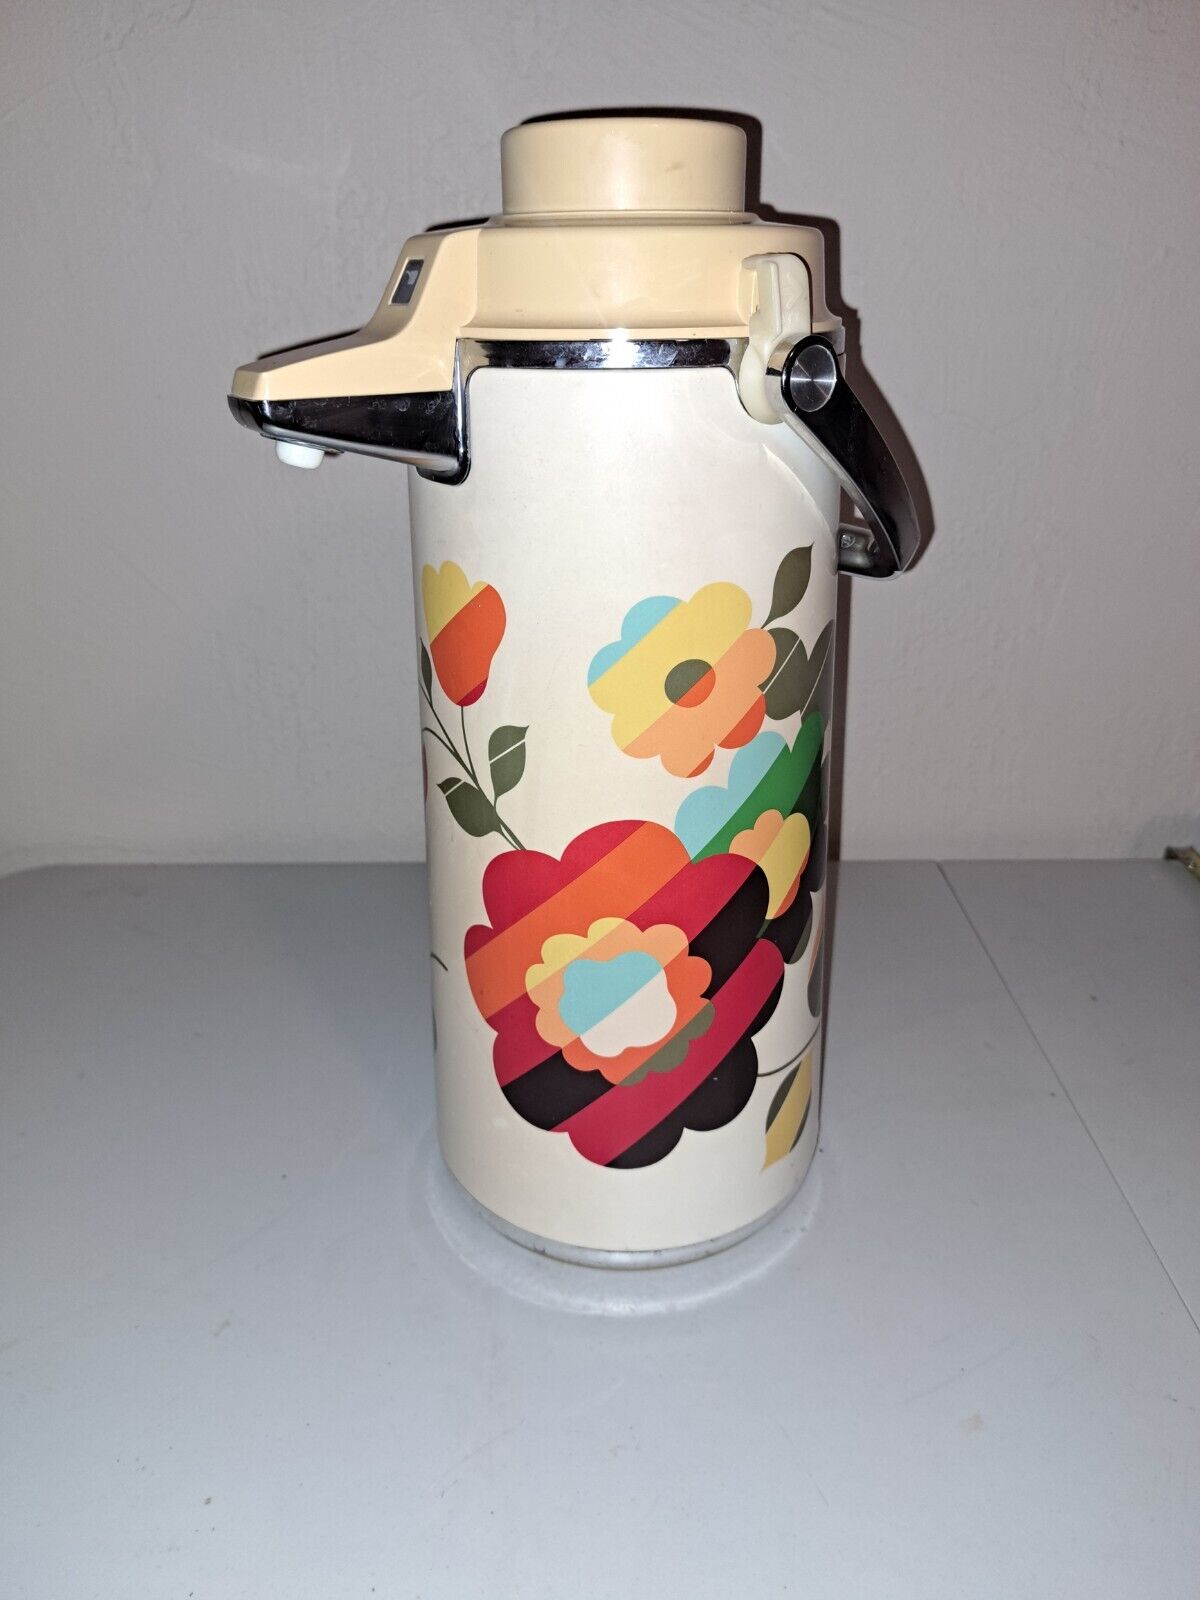 Retro Zojirushi Thermos Coffee Air Pot Multicolor Retro 1970s Mod Flower Design 